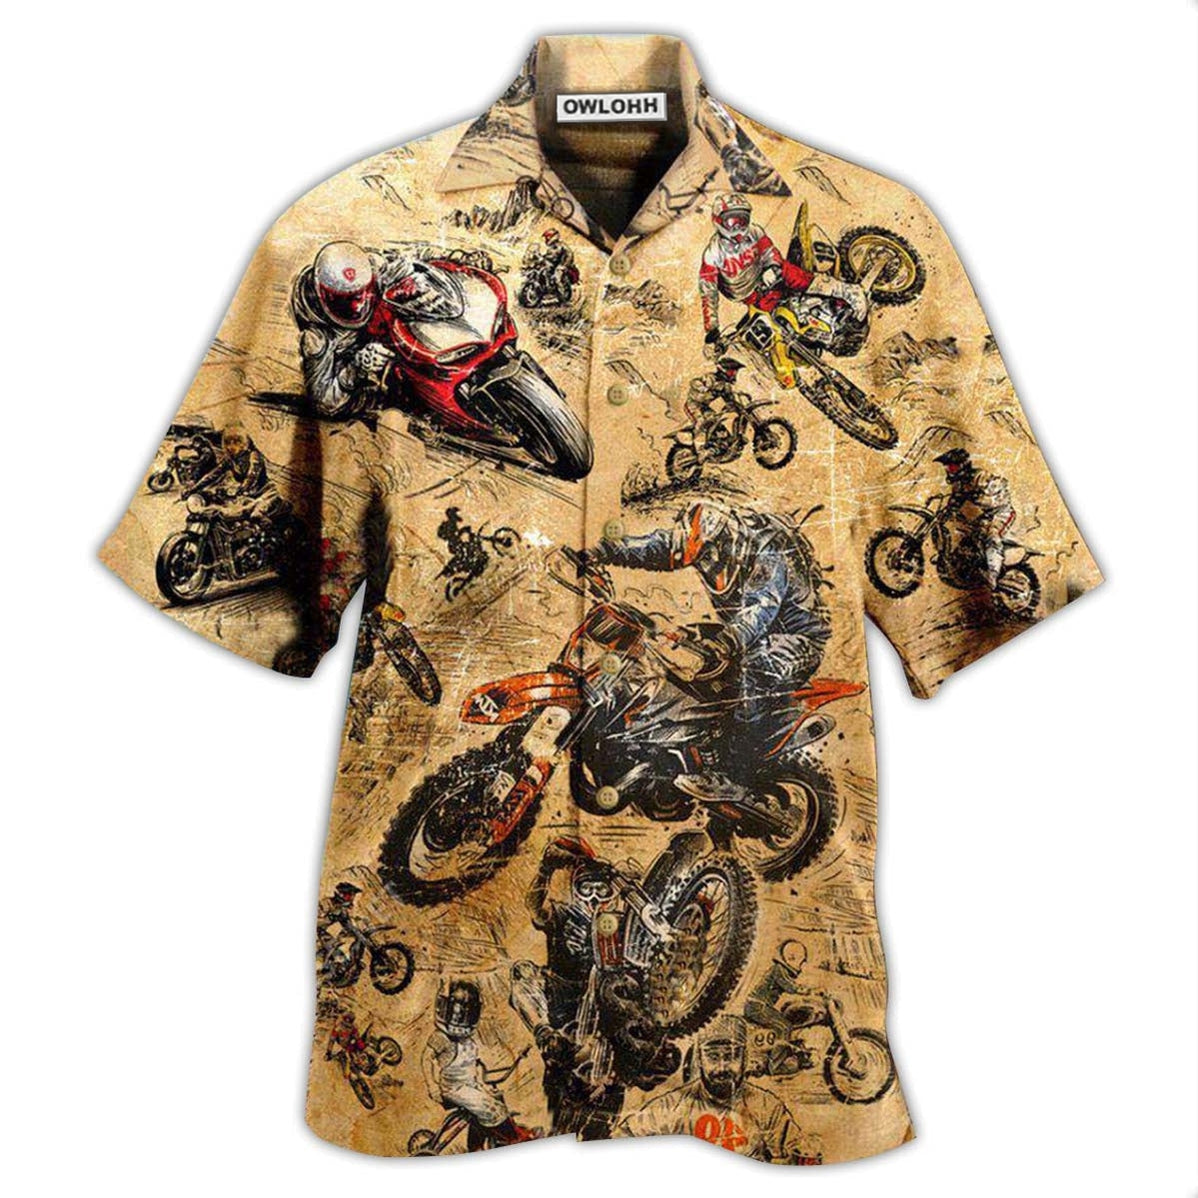 Hawaiian Shirt / Adults / S Motorcycle Racing Retro Vintage - Hawaiian Shirt - Owls Matrix LTD